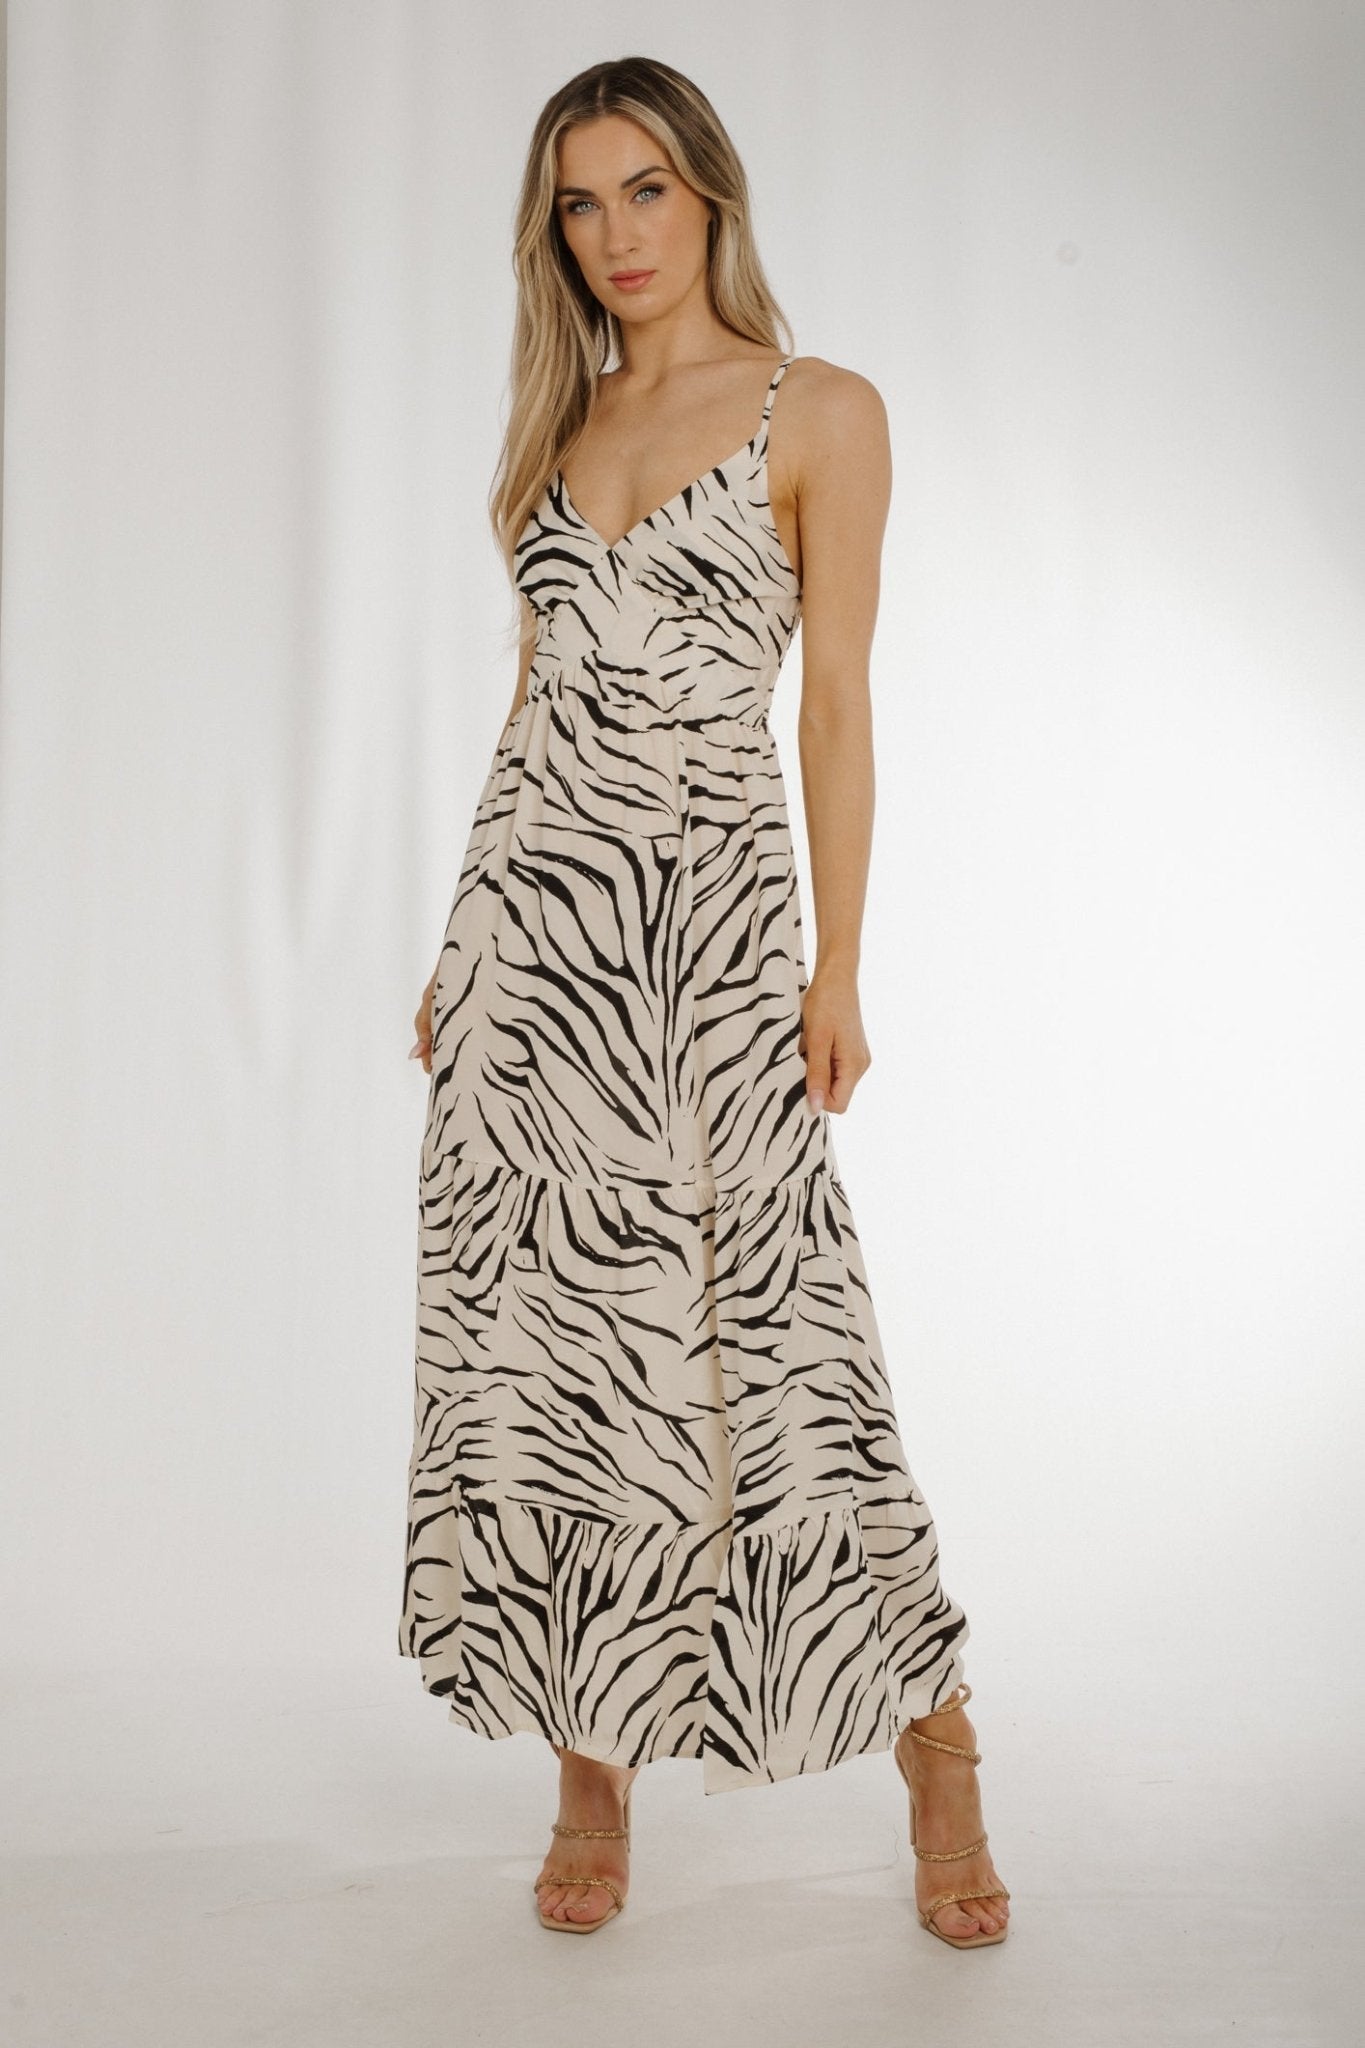 Ally V-Neck Zebra Print Dress In White & Black - The Walk in Wardrobe